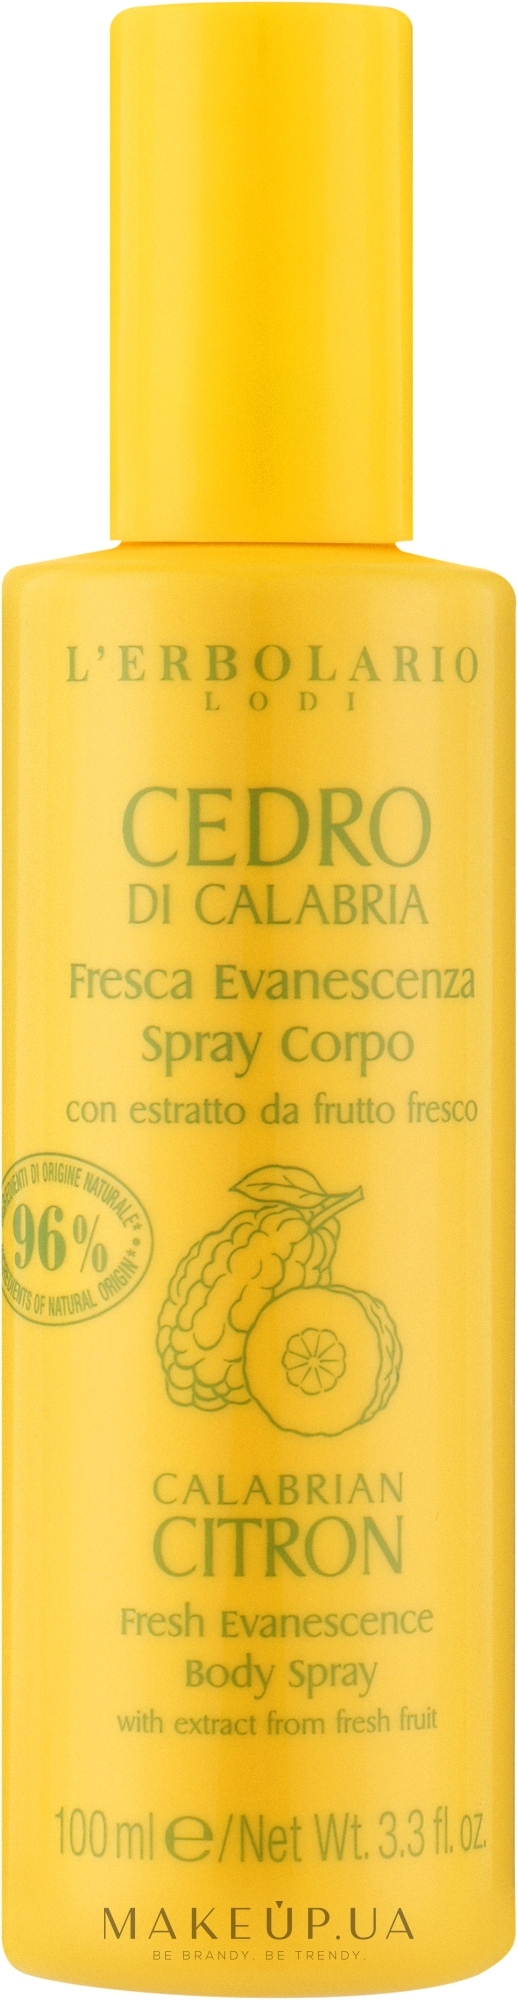 Освіжальний спрей для тіла "Калабрійський цитрон" - L'Erbolario Calabrian Citron Fresh Evanescence Body Spray — фото 100ml